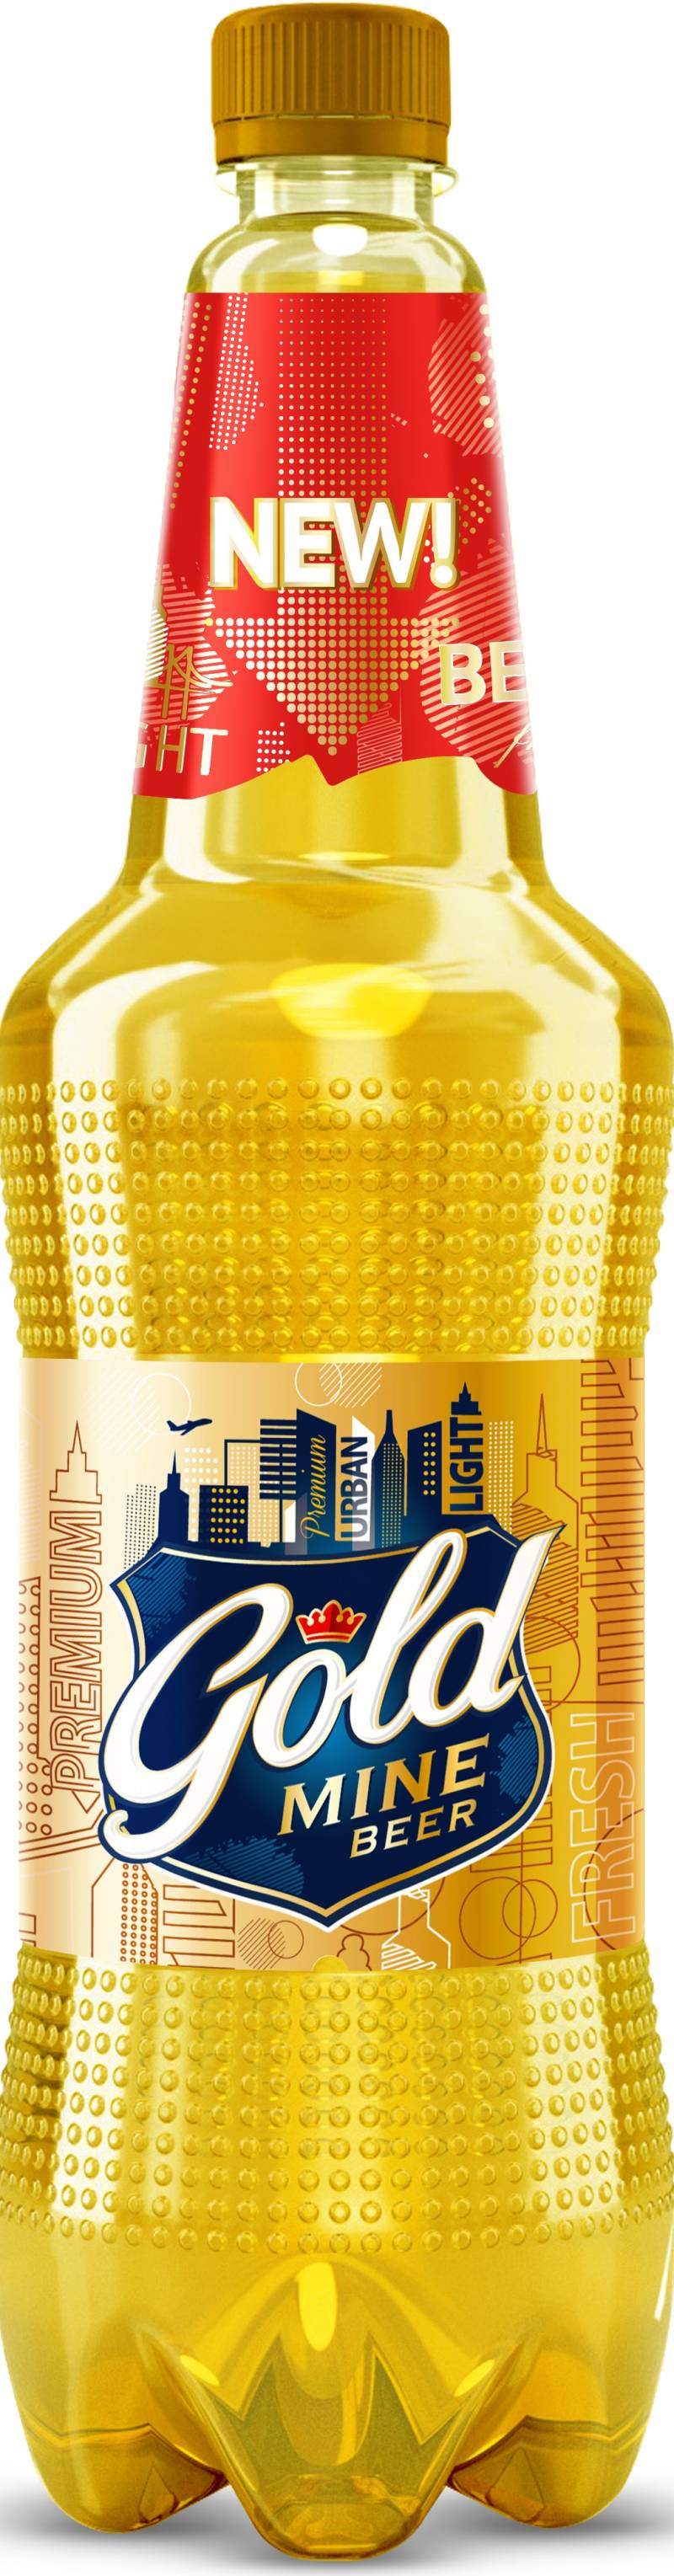 Пиво Gold Mine Beer 1,35 л. (Россия)